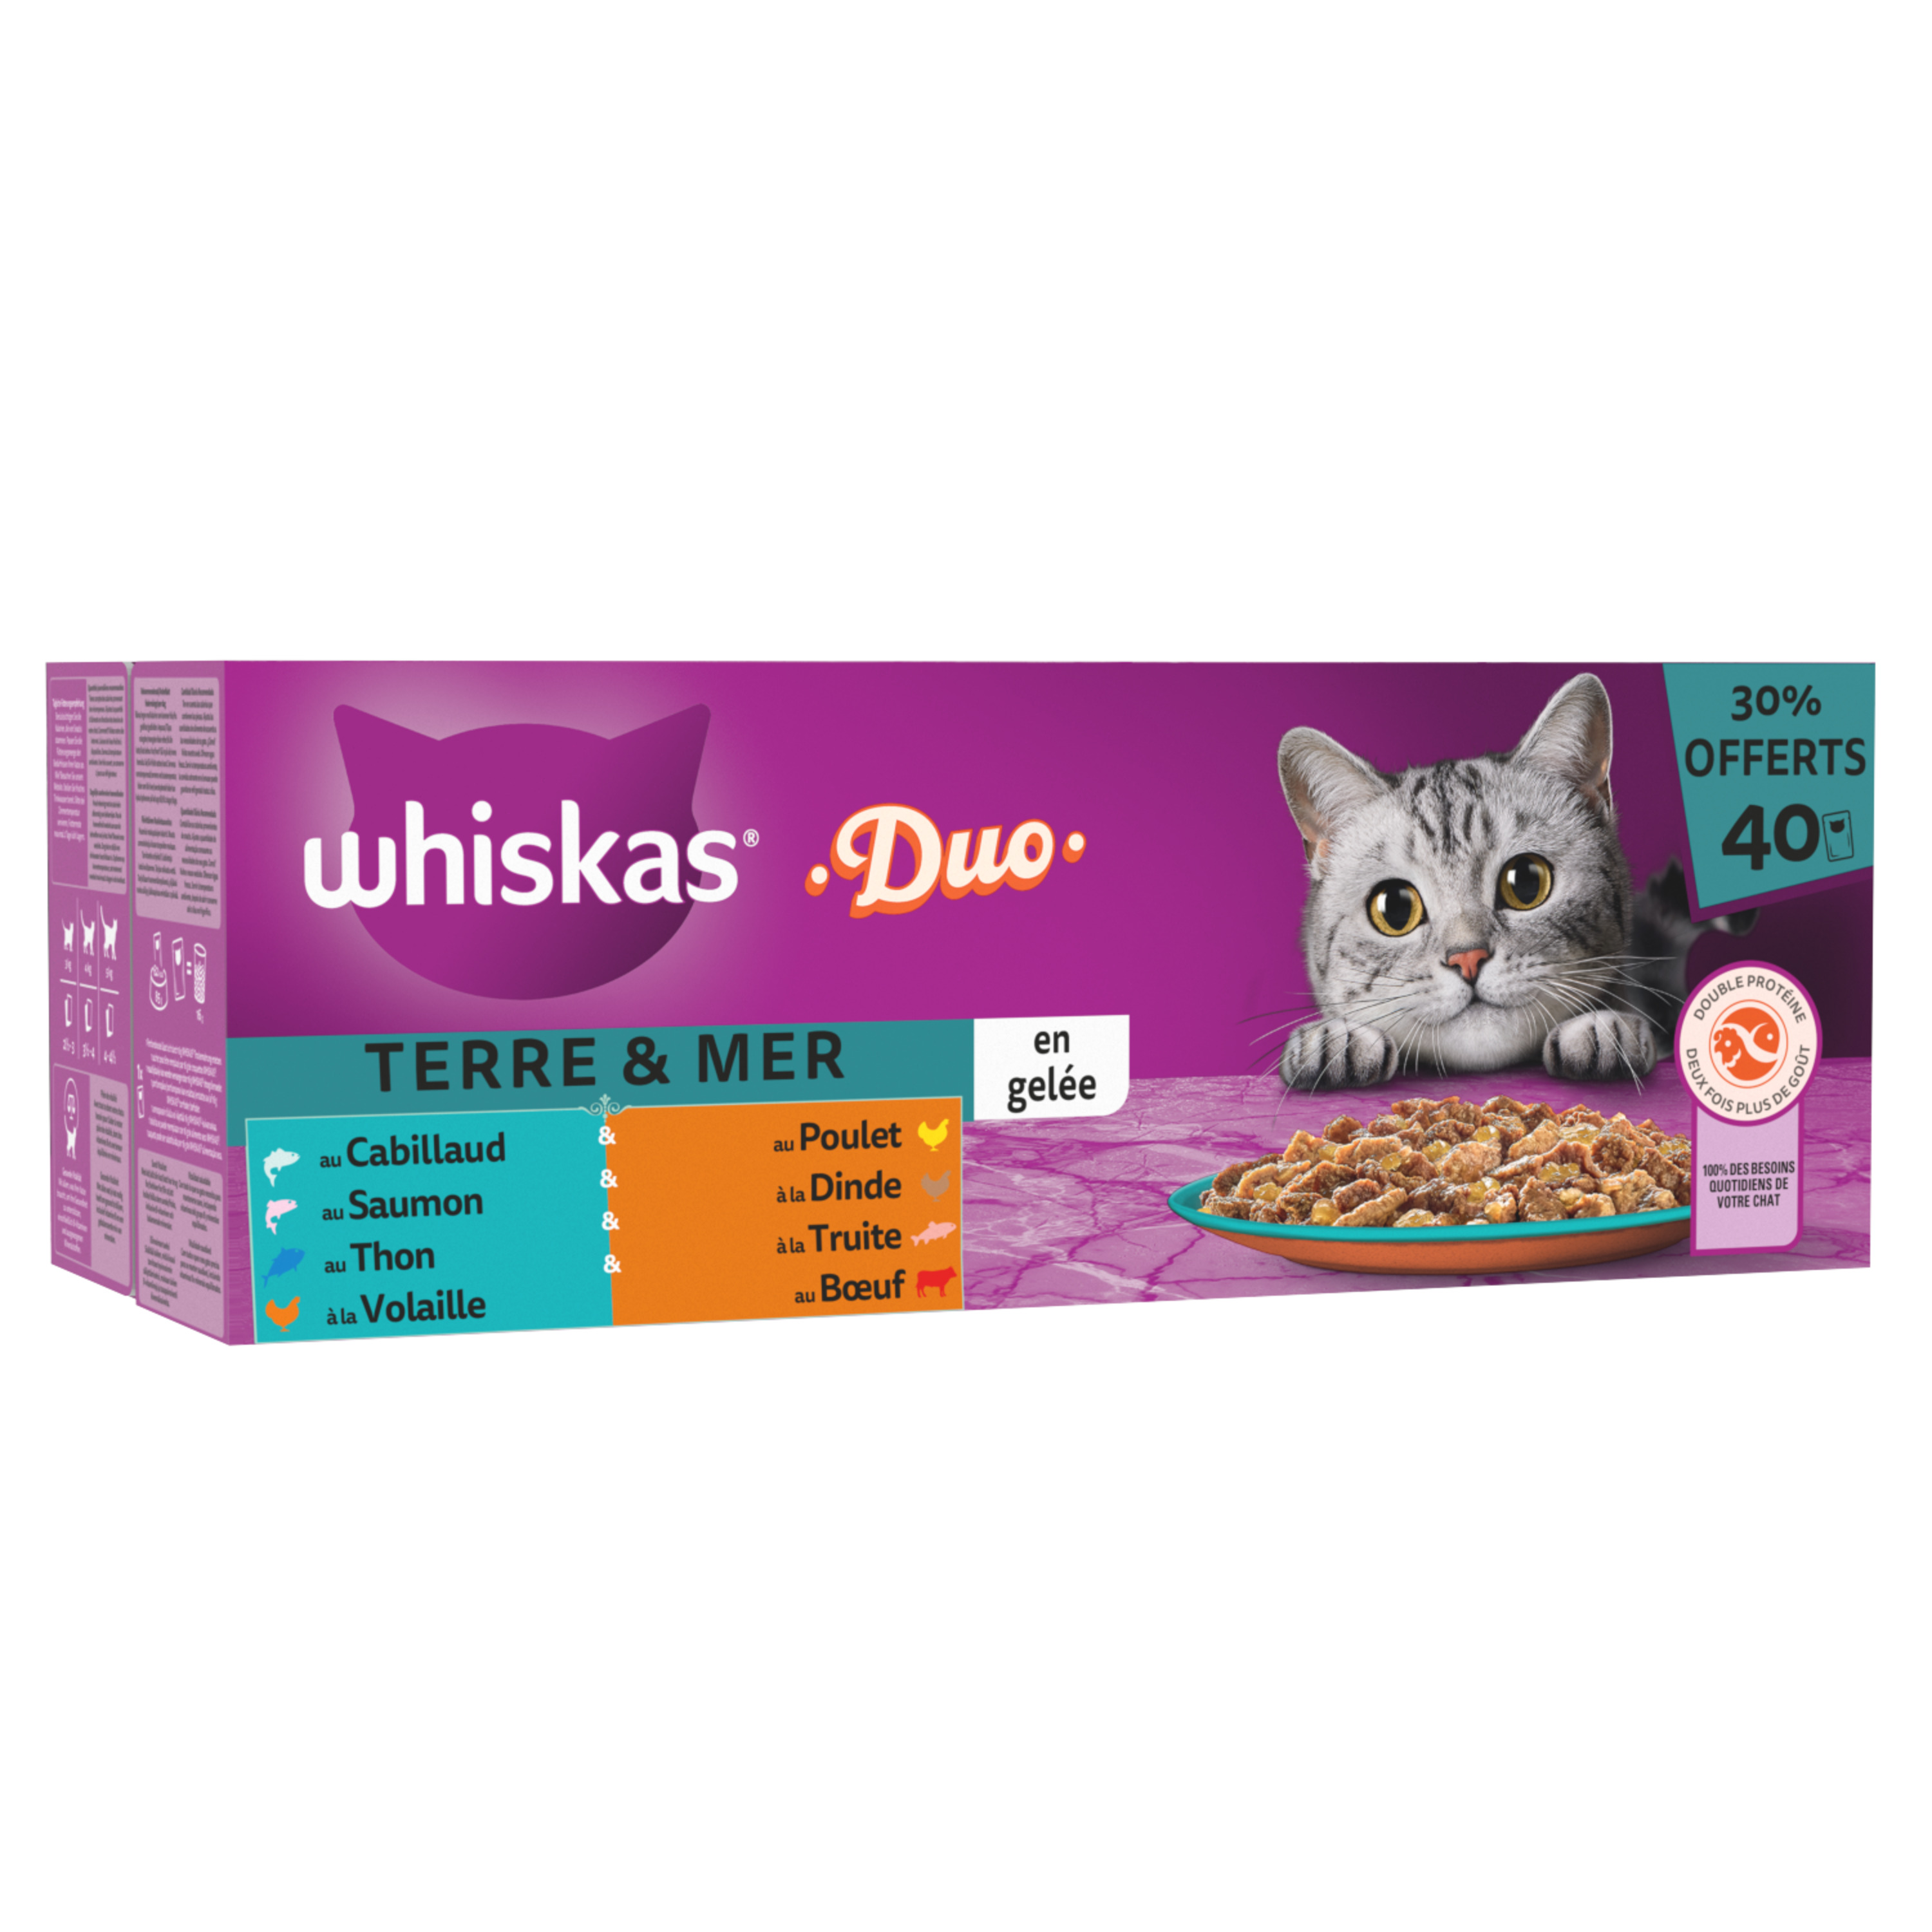 Nourriture humide pour chats Whiskas Sélections de viande, 1,2 kg, paq. 12